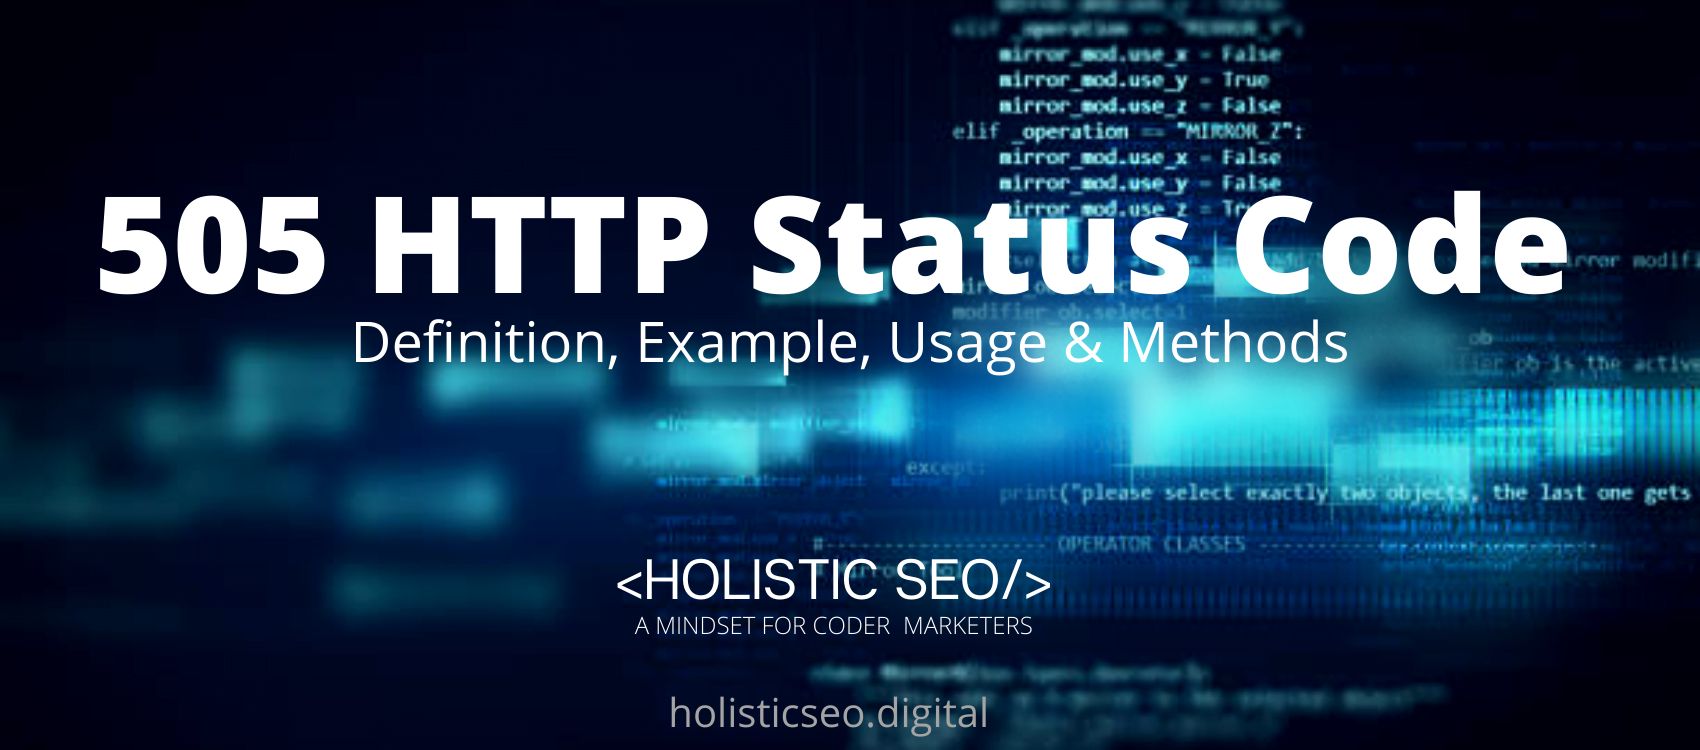 505 HTTP Status Code